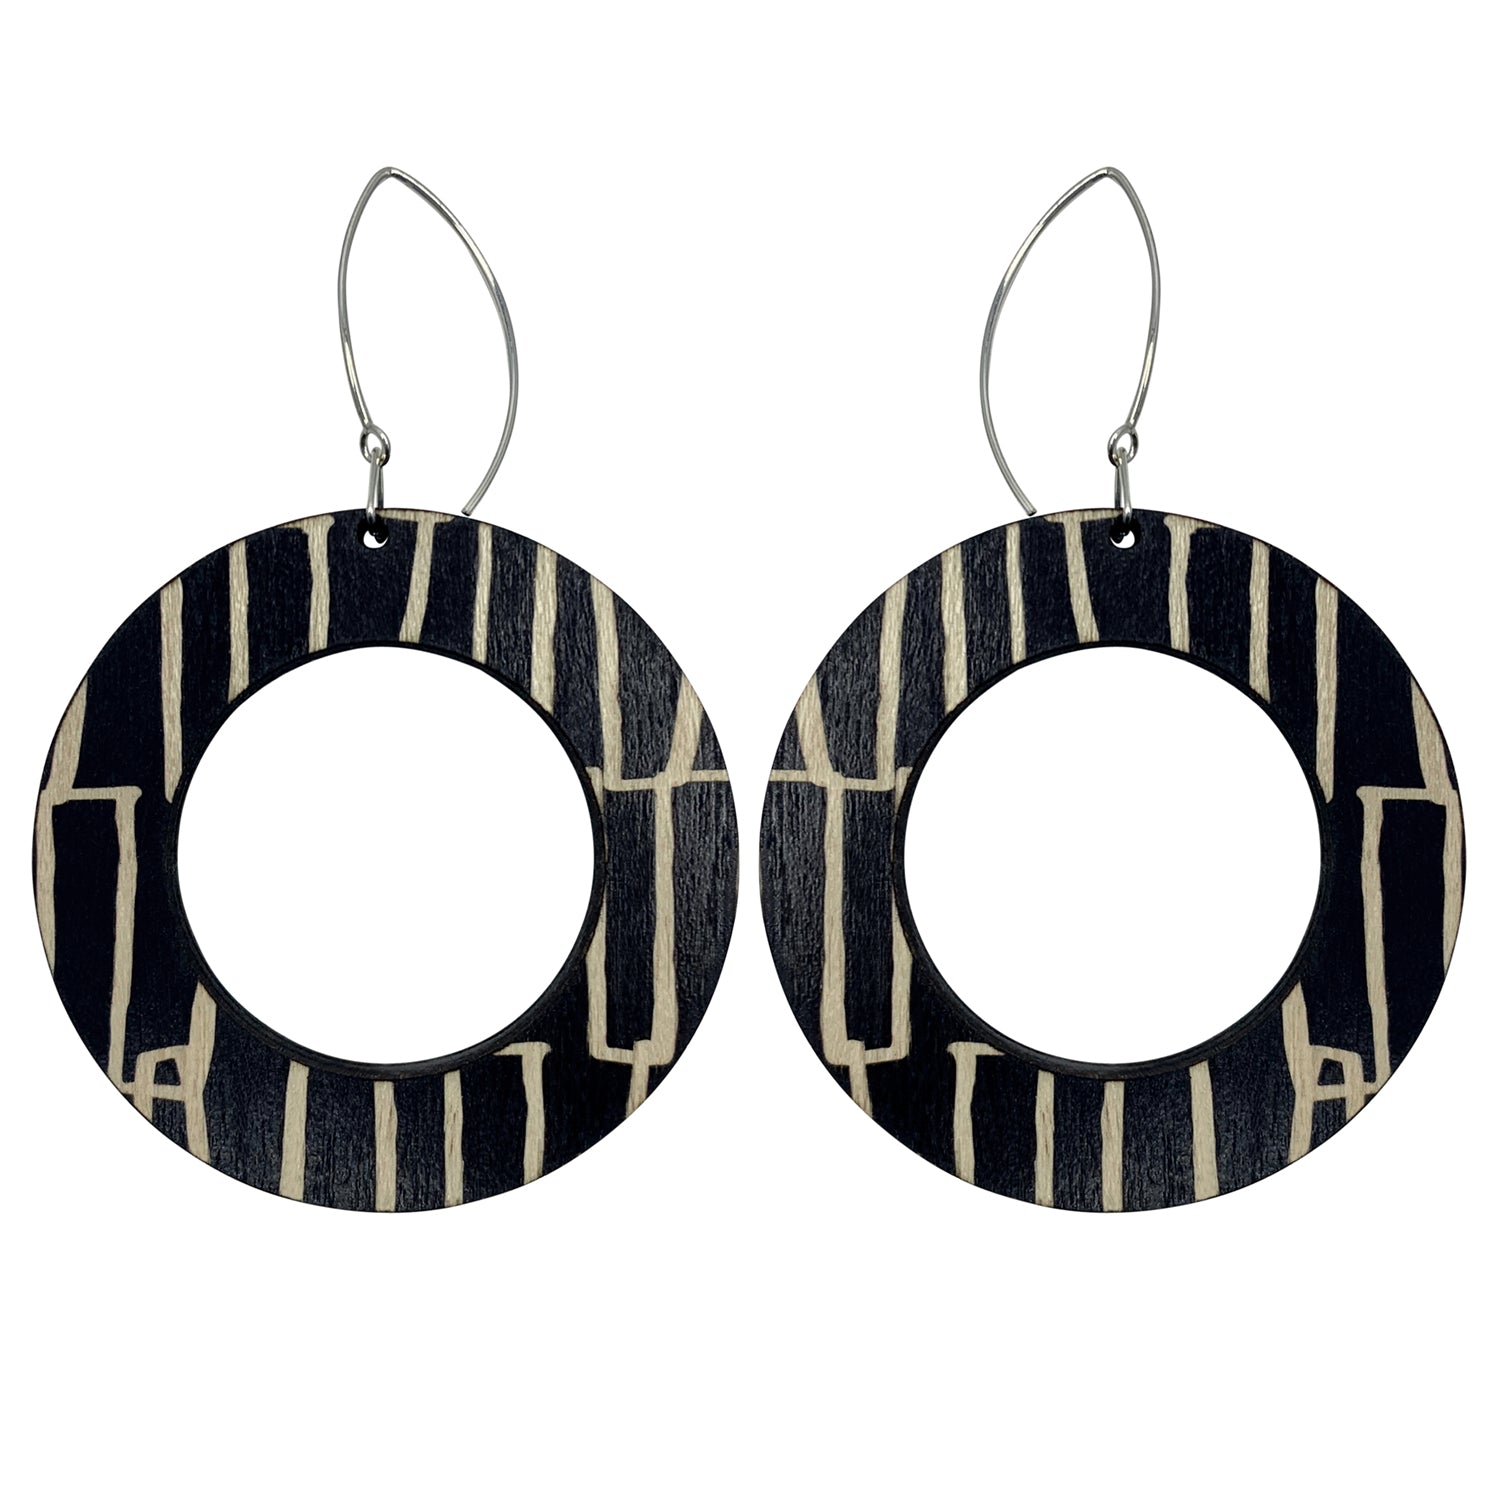 City pattern hoop wooden earrings